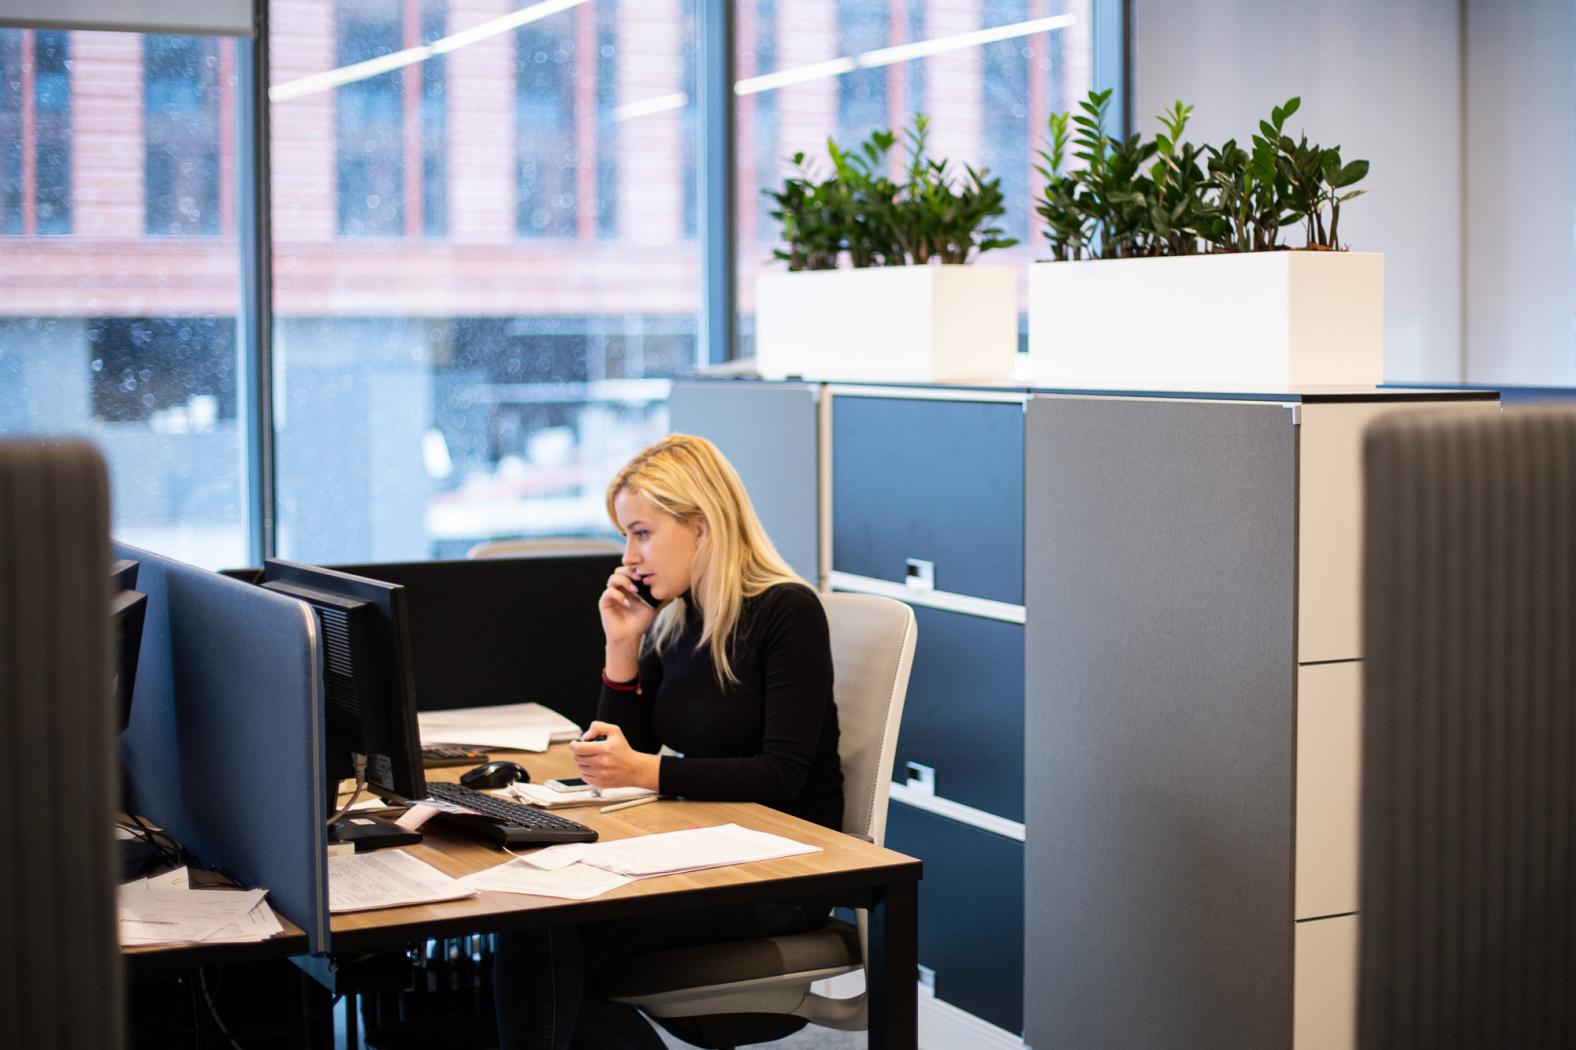 Для снижения уровня шума рабочие места в офисе разделены высокими ящиками и растениями.